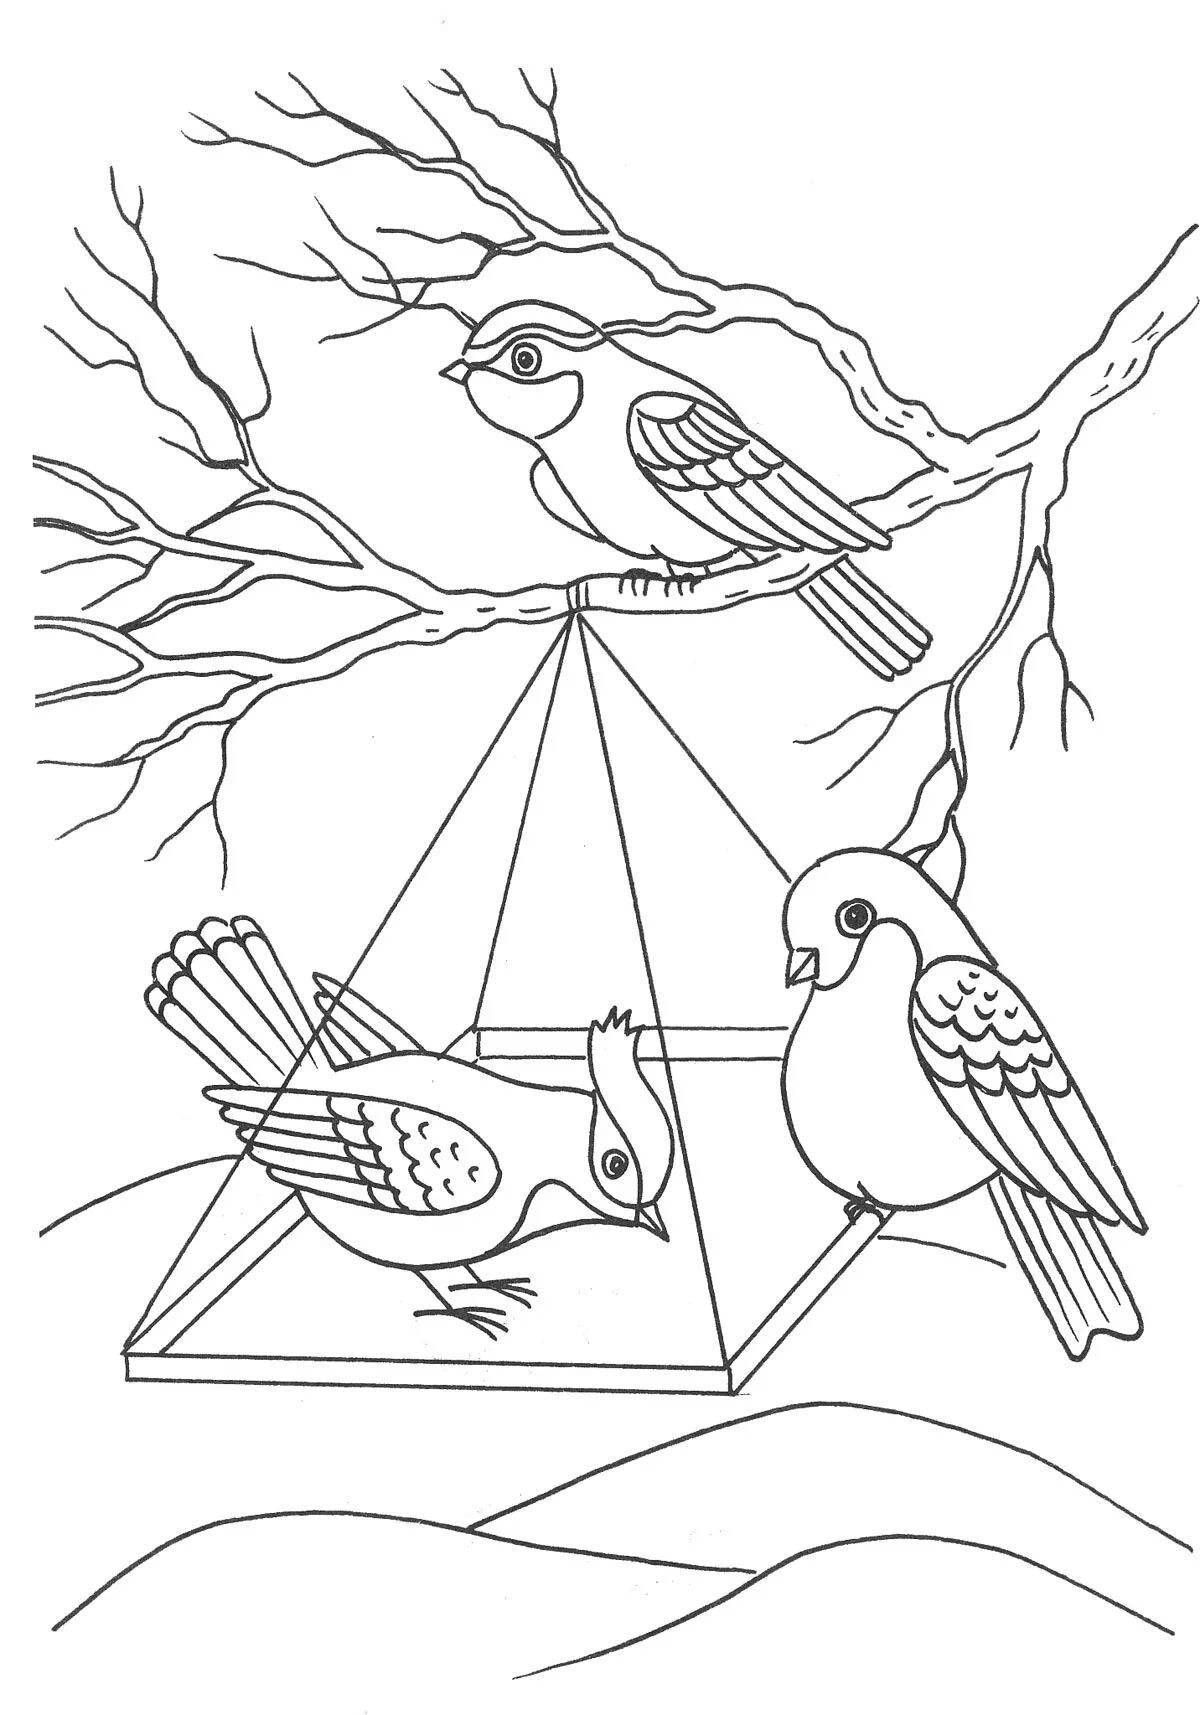 Великолепный рисунок «накорми птиц зимой» для детей 6-7 лет